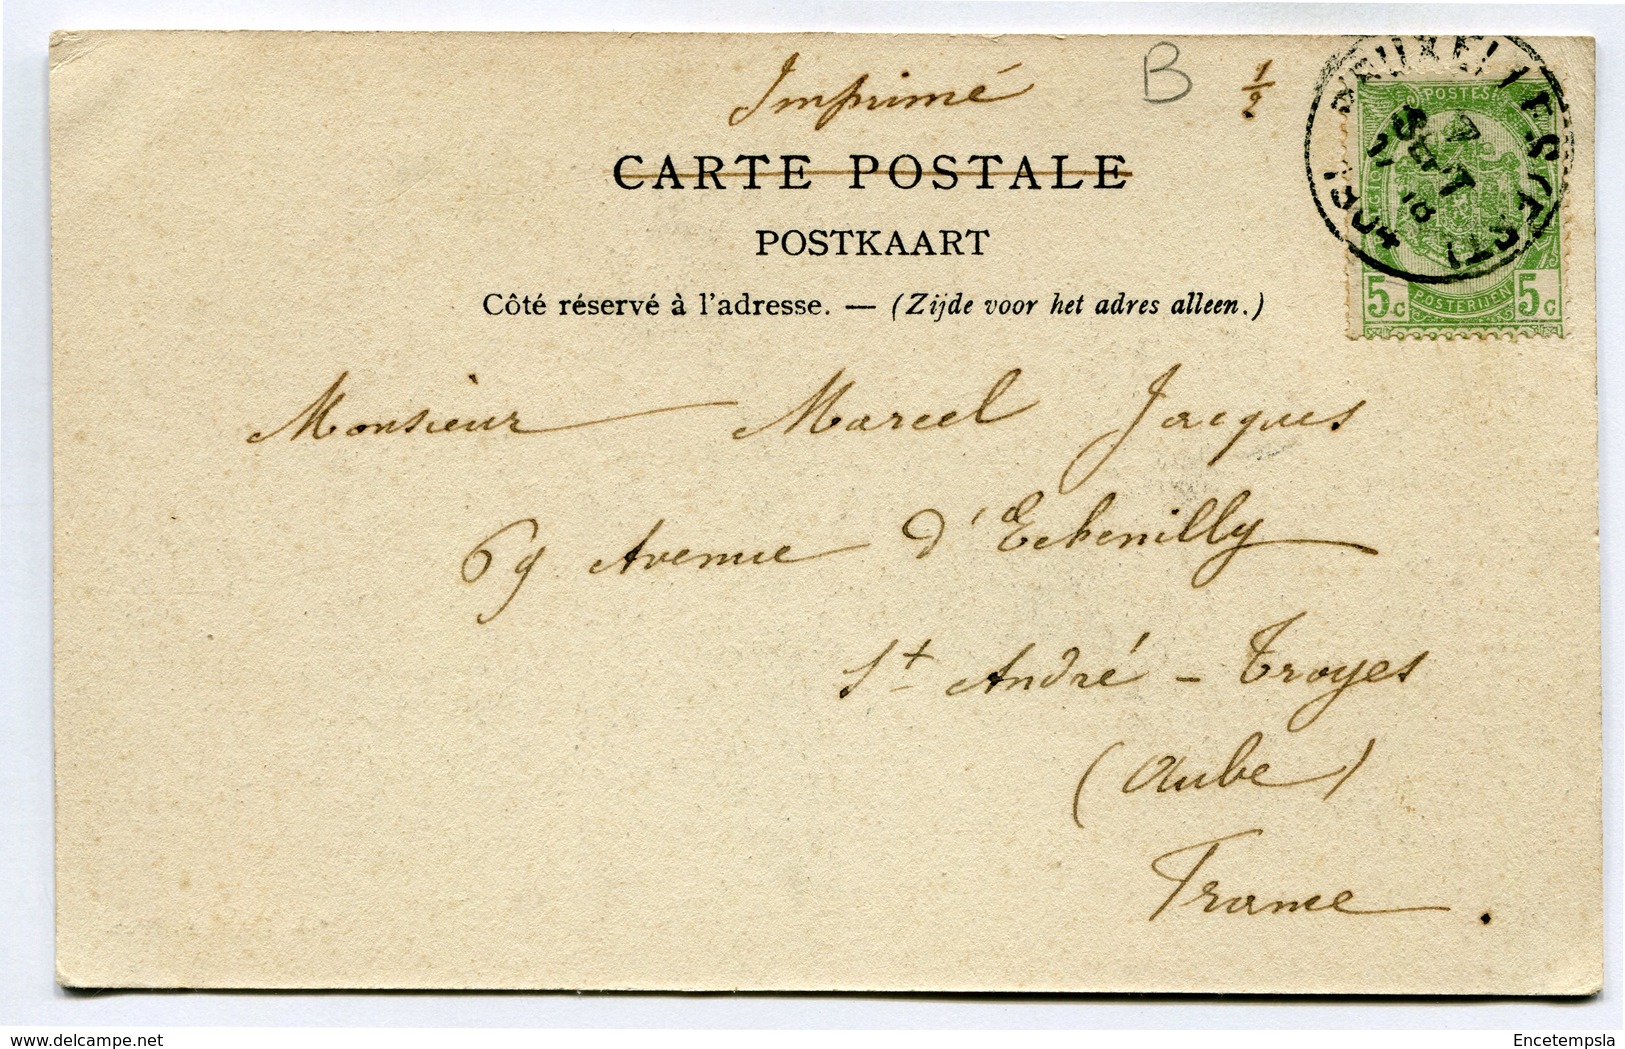 CPA - Carte Postale - Belgique - Bruxelles - L'entrepôt - 1904  ( SV5417 ) - Transport (sea) - Harbour